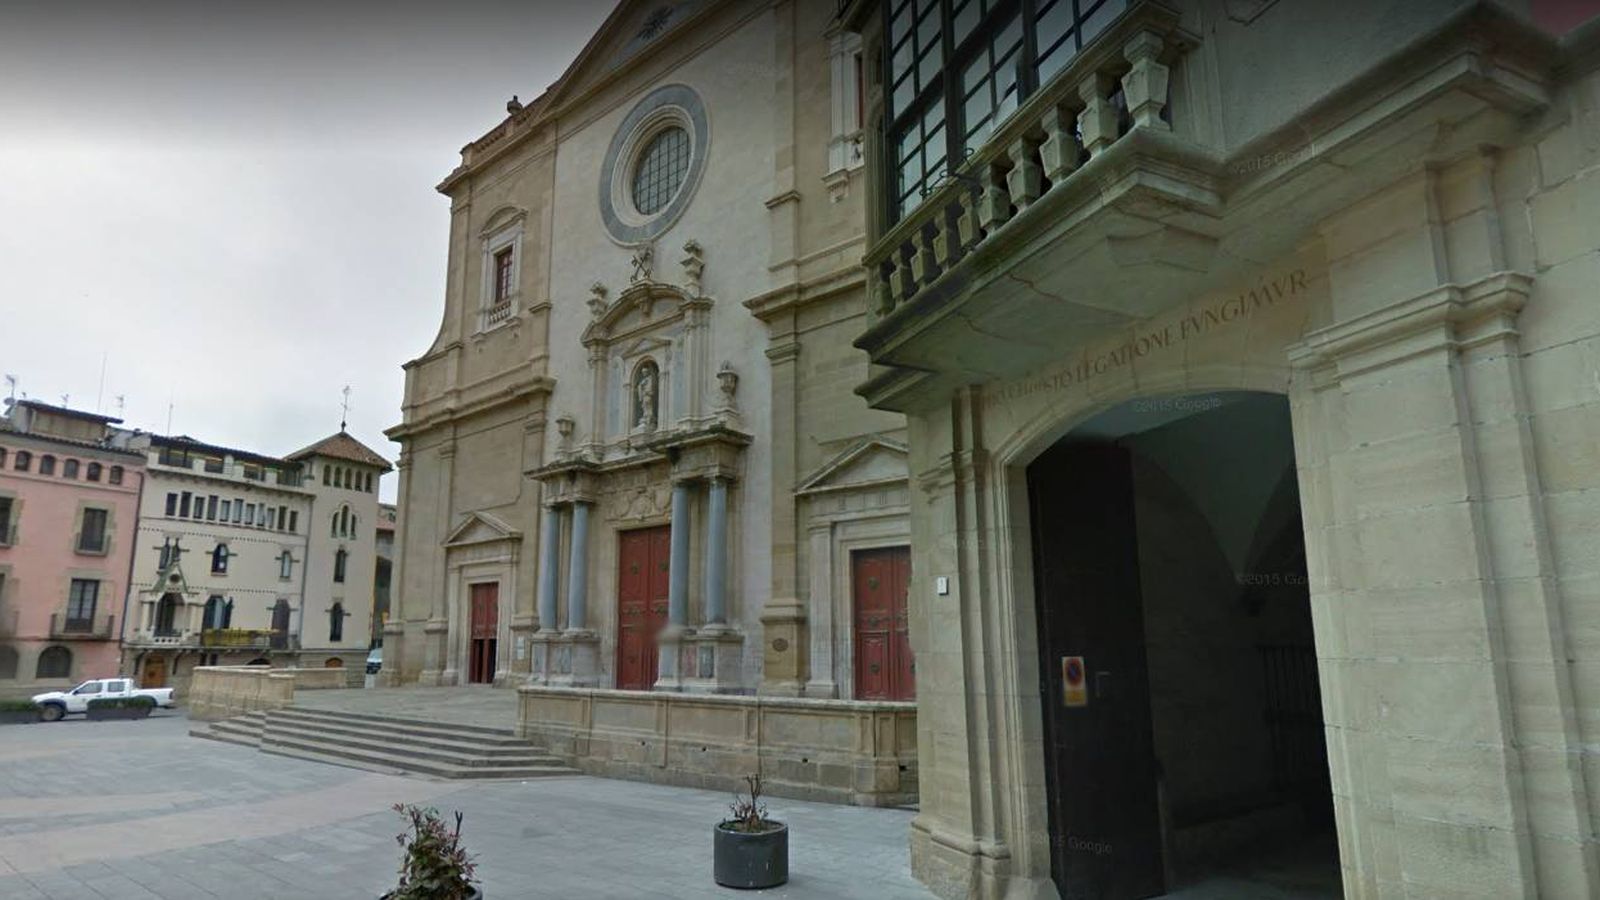 Foto: Exterior de una sede católica sufragánea de la archidiócesis de Tarragona (Google Maps)